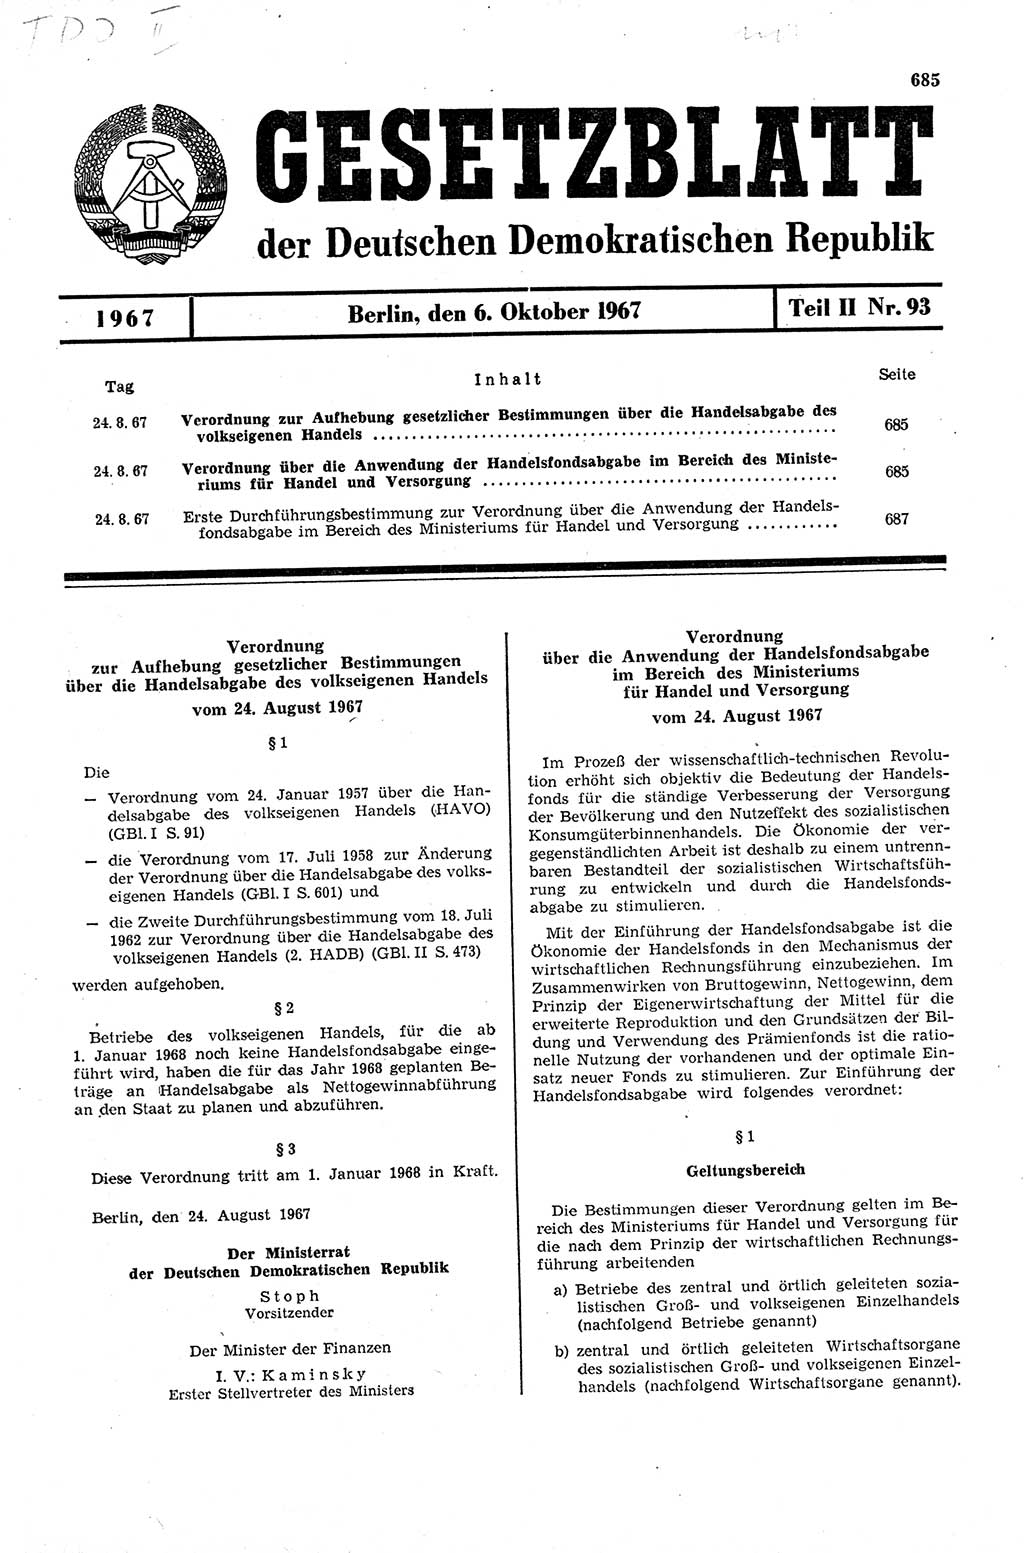 Gesetzblatt (GBl.) der Deutschen Demokratischen Republik (DDR) Teil ⅠⅠ 1967, Seite 685 (GBl. DDR ⅠⅠ 1967, S. 685)